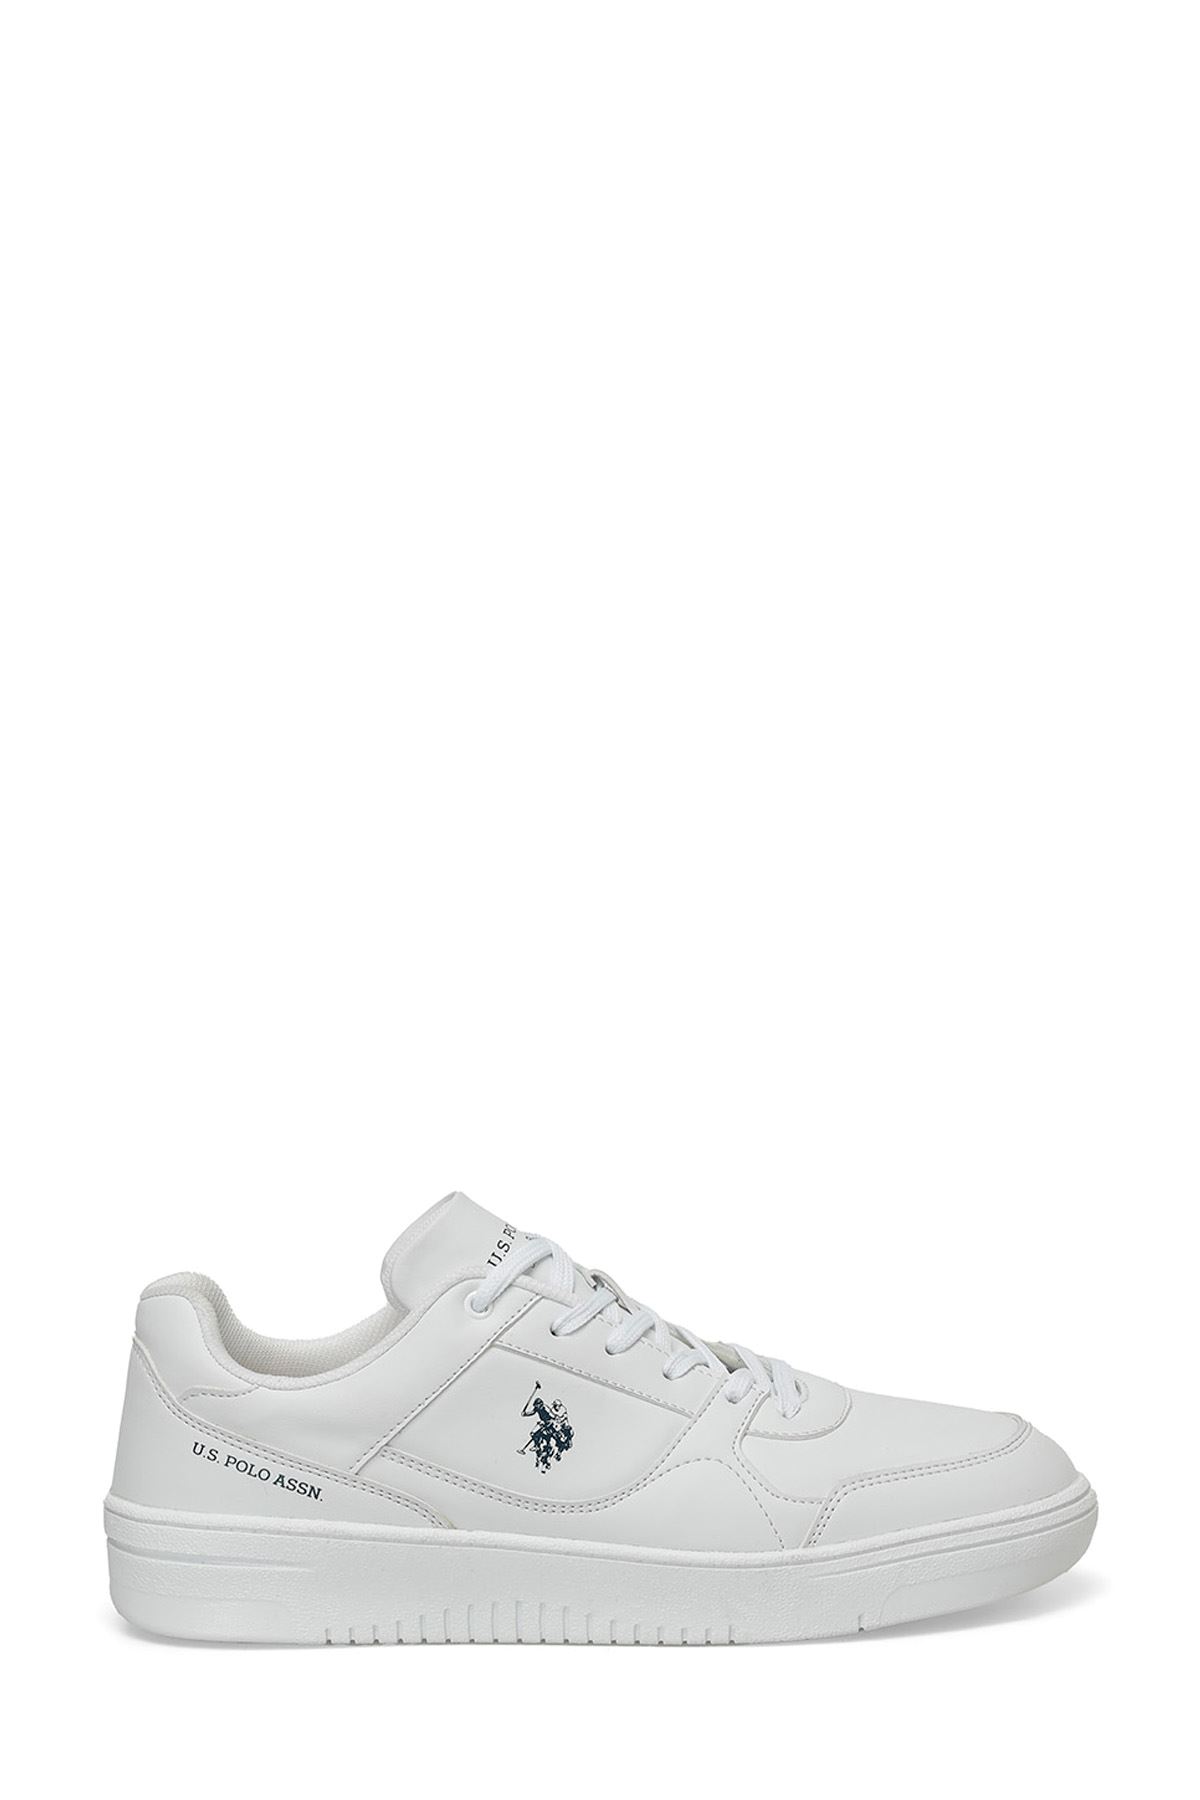 Lee 4Fx U.S. Polo Assn. Erkek Beyaz Spor Ayakkabı - 101501895